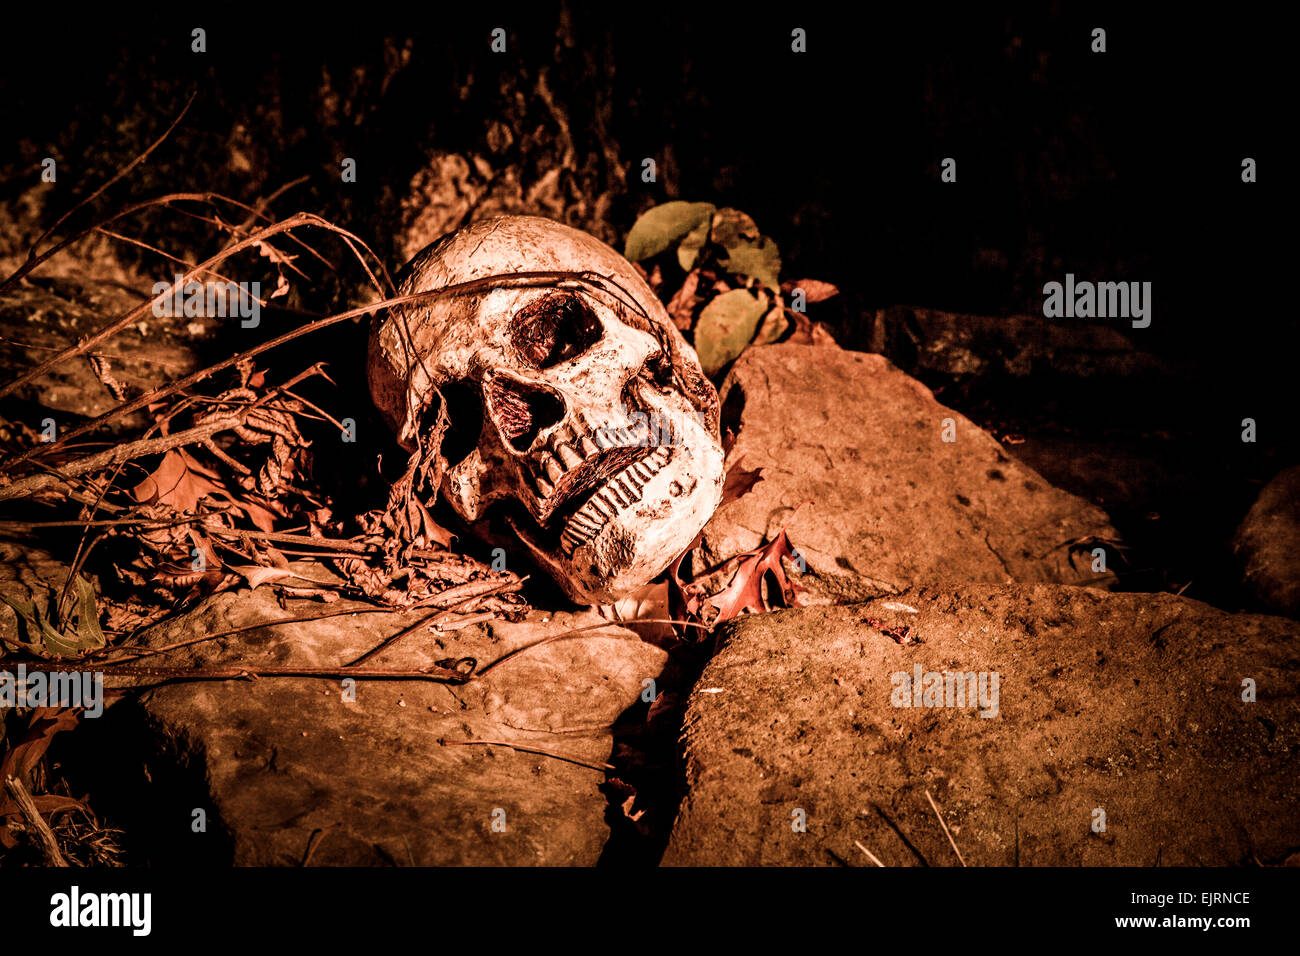 Un crâne sur le sol dans les bois ; photographié dans l'obscurité à l'aide de light painting Banque D'Images